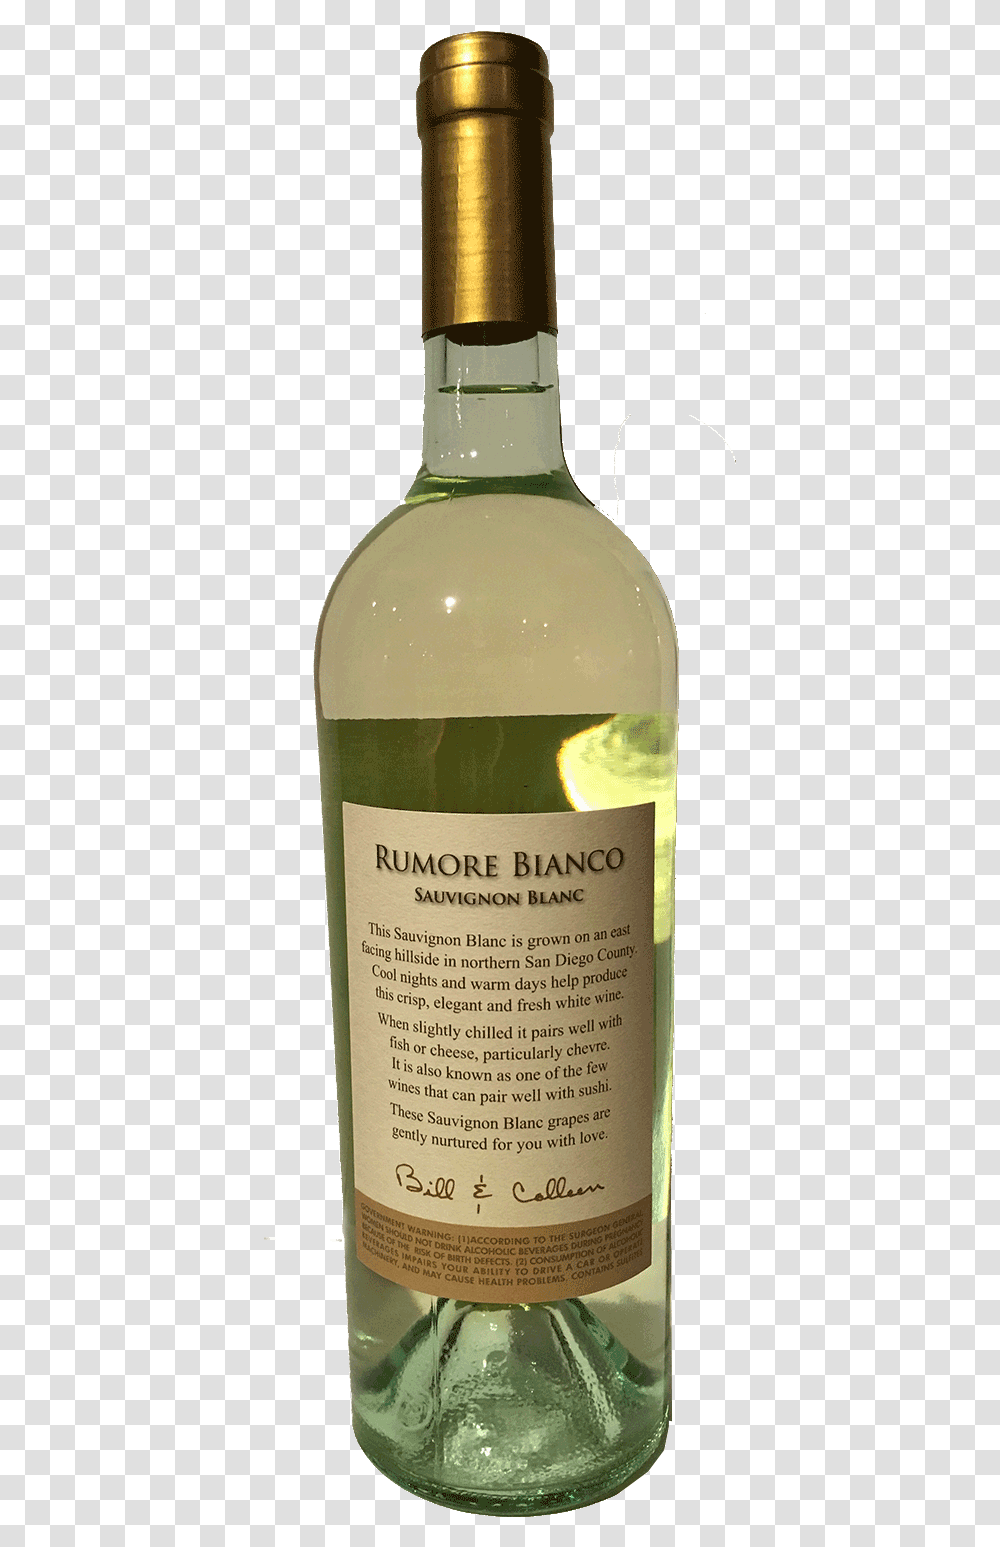 Bottle Romore Bianco Back Glass Bottle, Liquor, Alcohol, Beverage, Drink Transparent Png